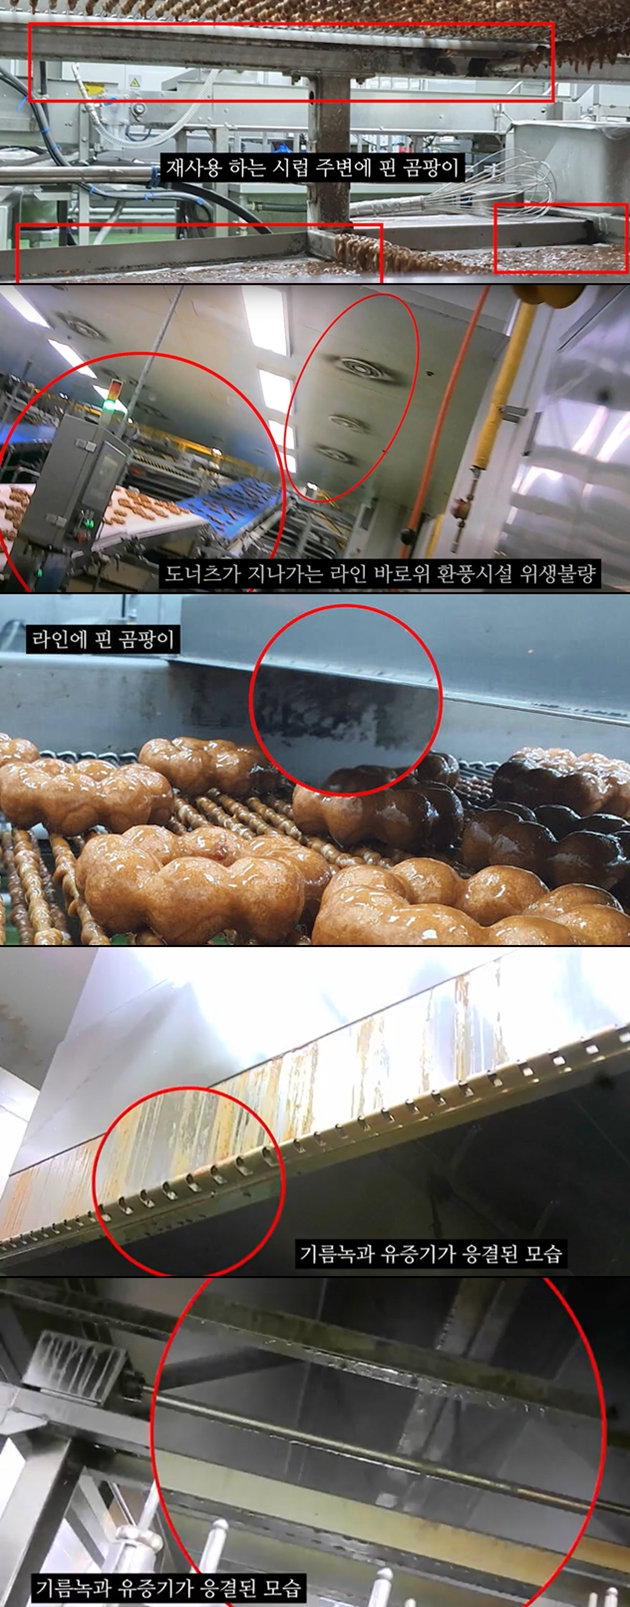 ▲ 공익신고자 A씨가 5일 추가 공개한 던킨 도넛 공장 모습